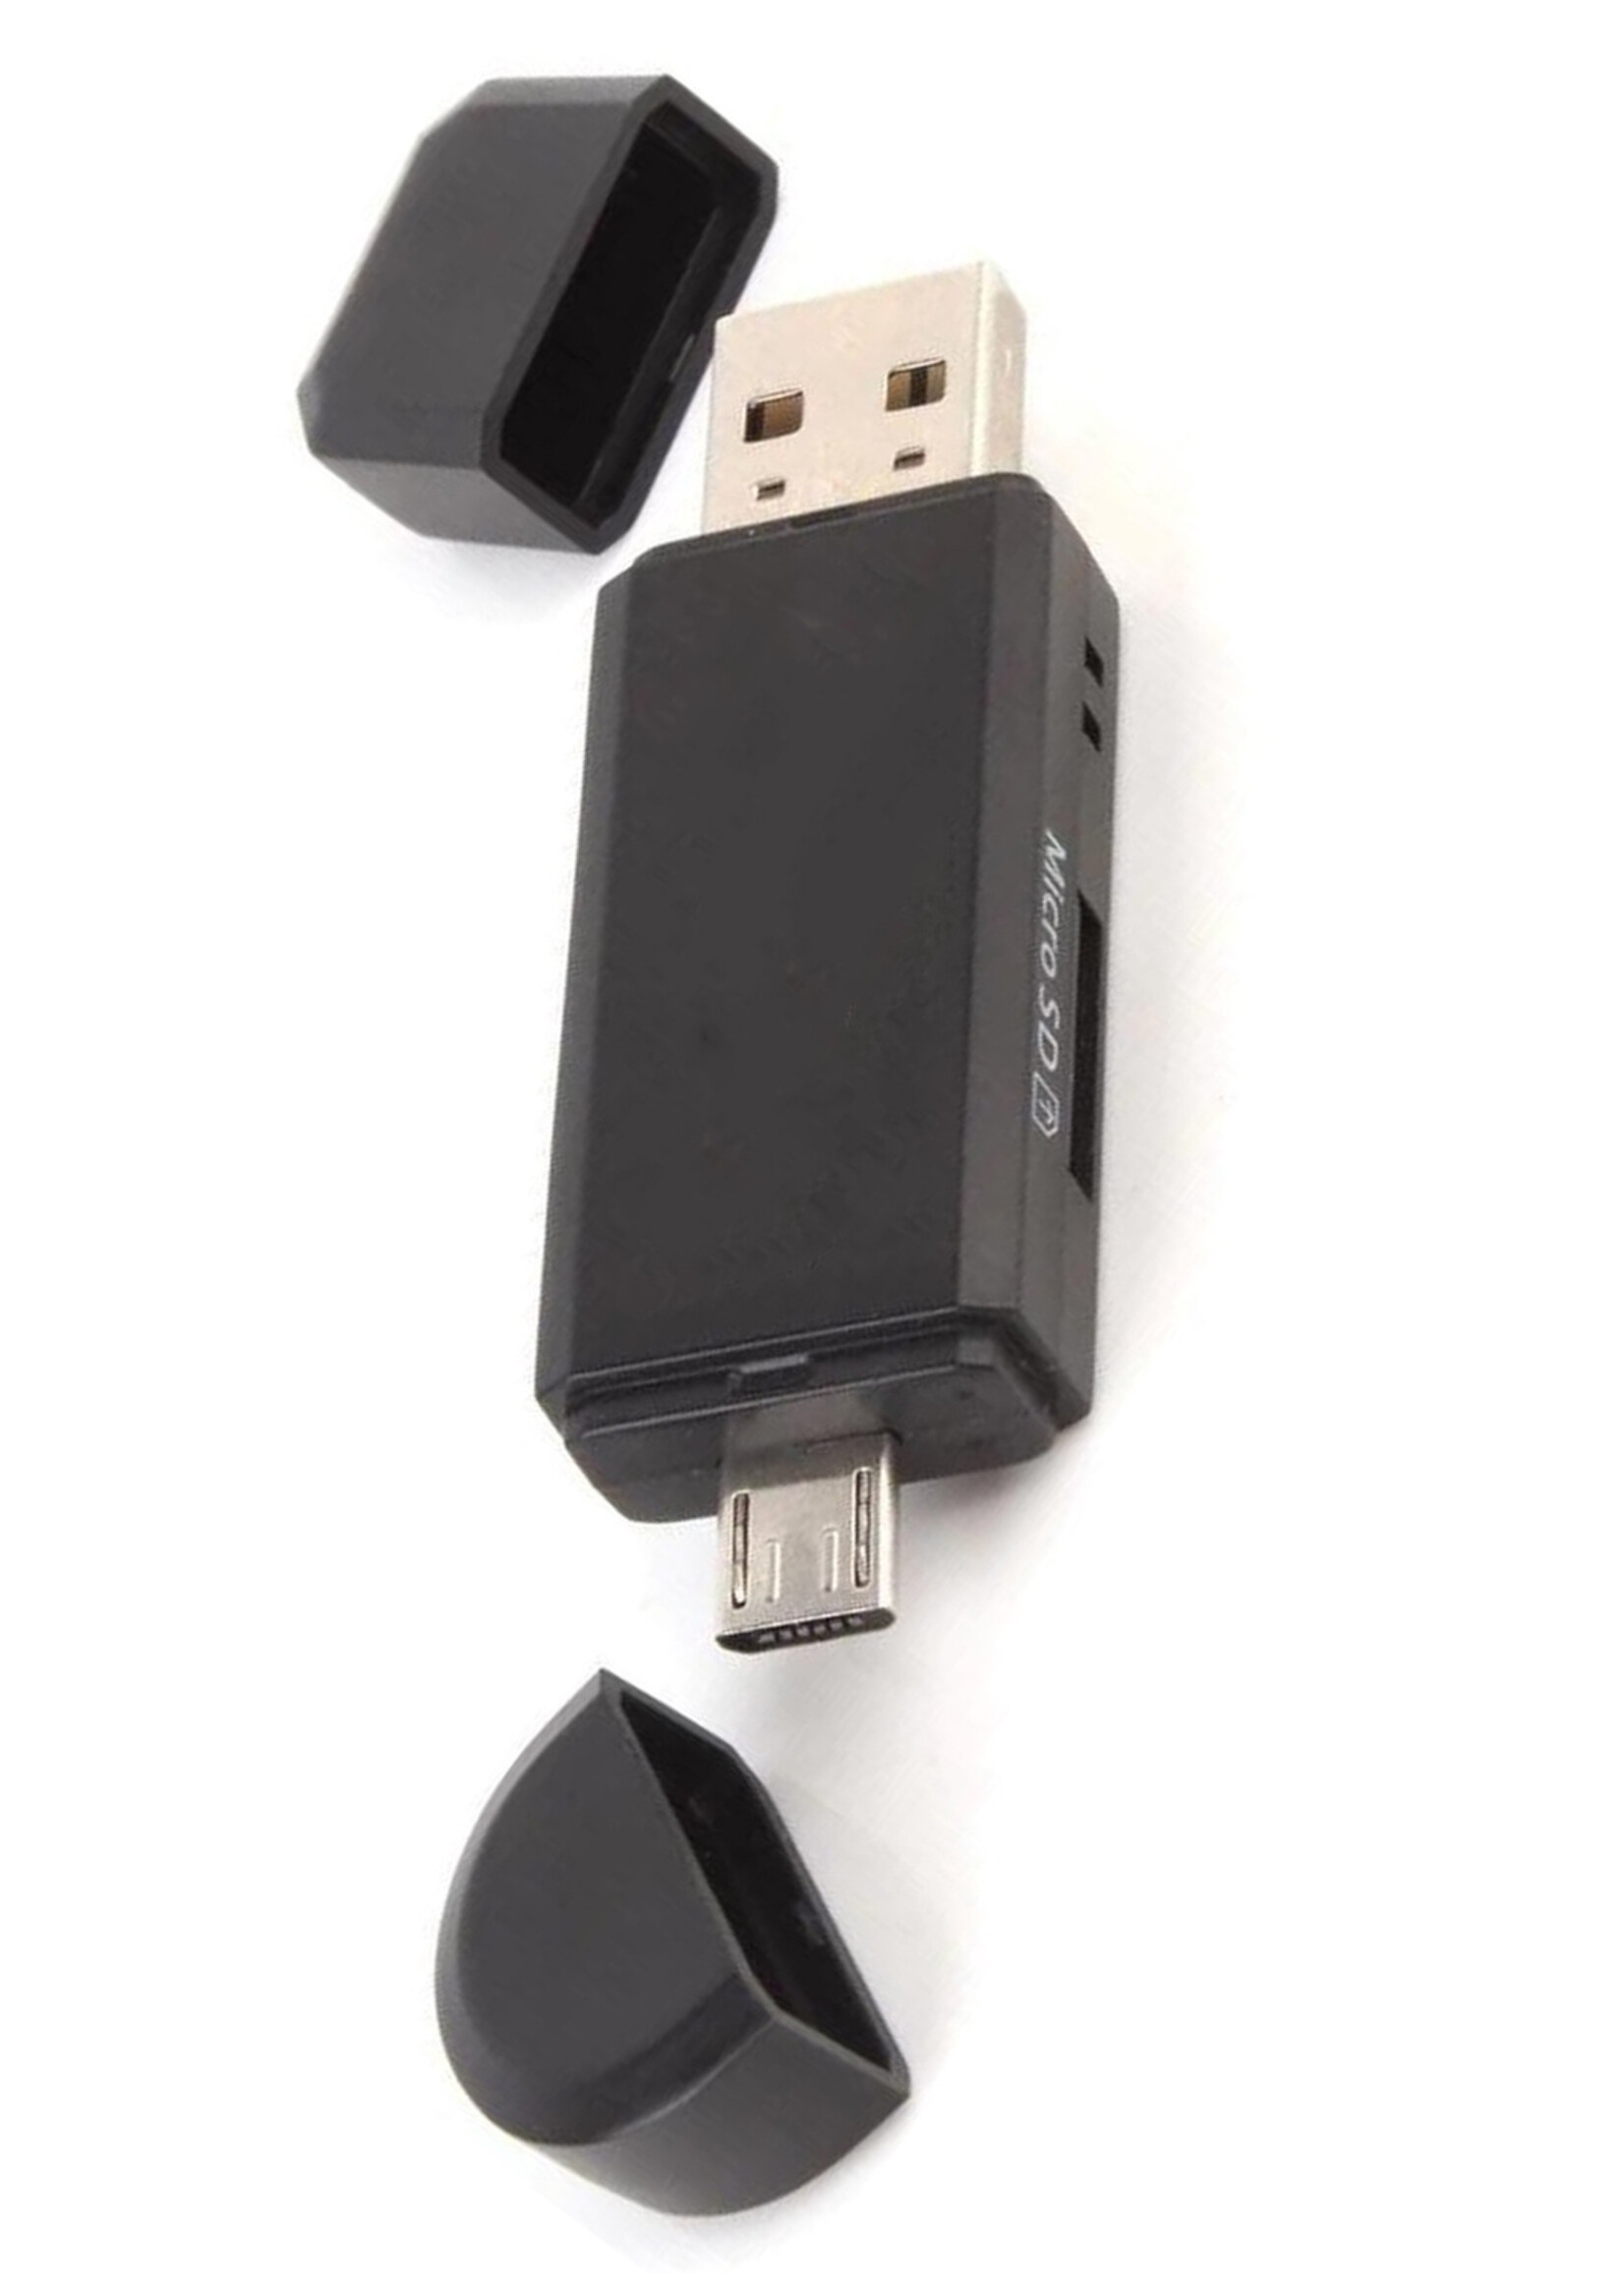 LUQ SD Kaartlezer Micro SD Kaartlezer USB OTG SD Card Reader 4-in-1 Micro SD Card Reader USB - Geschikt voor Telefoon, PC en Tablet